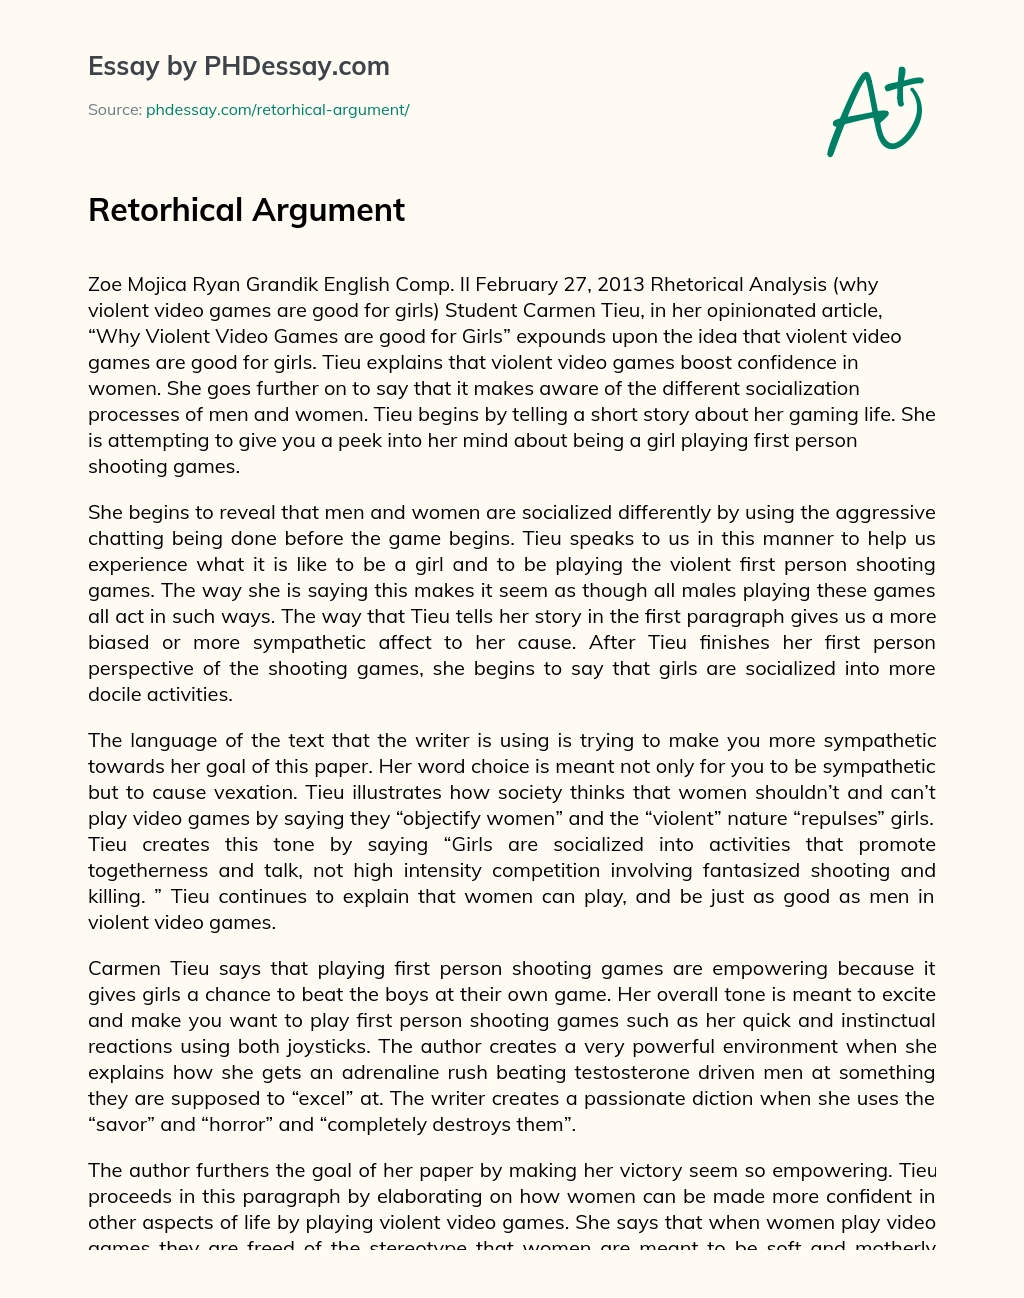 Retorhical Argument essay